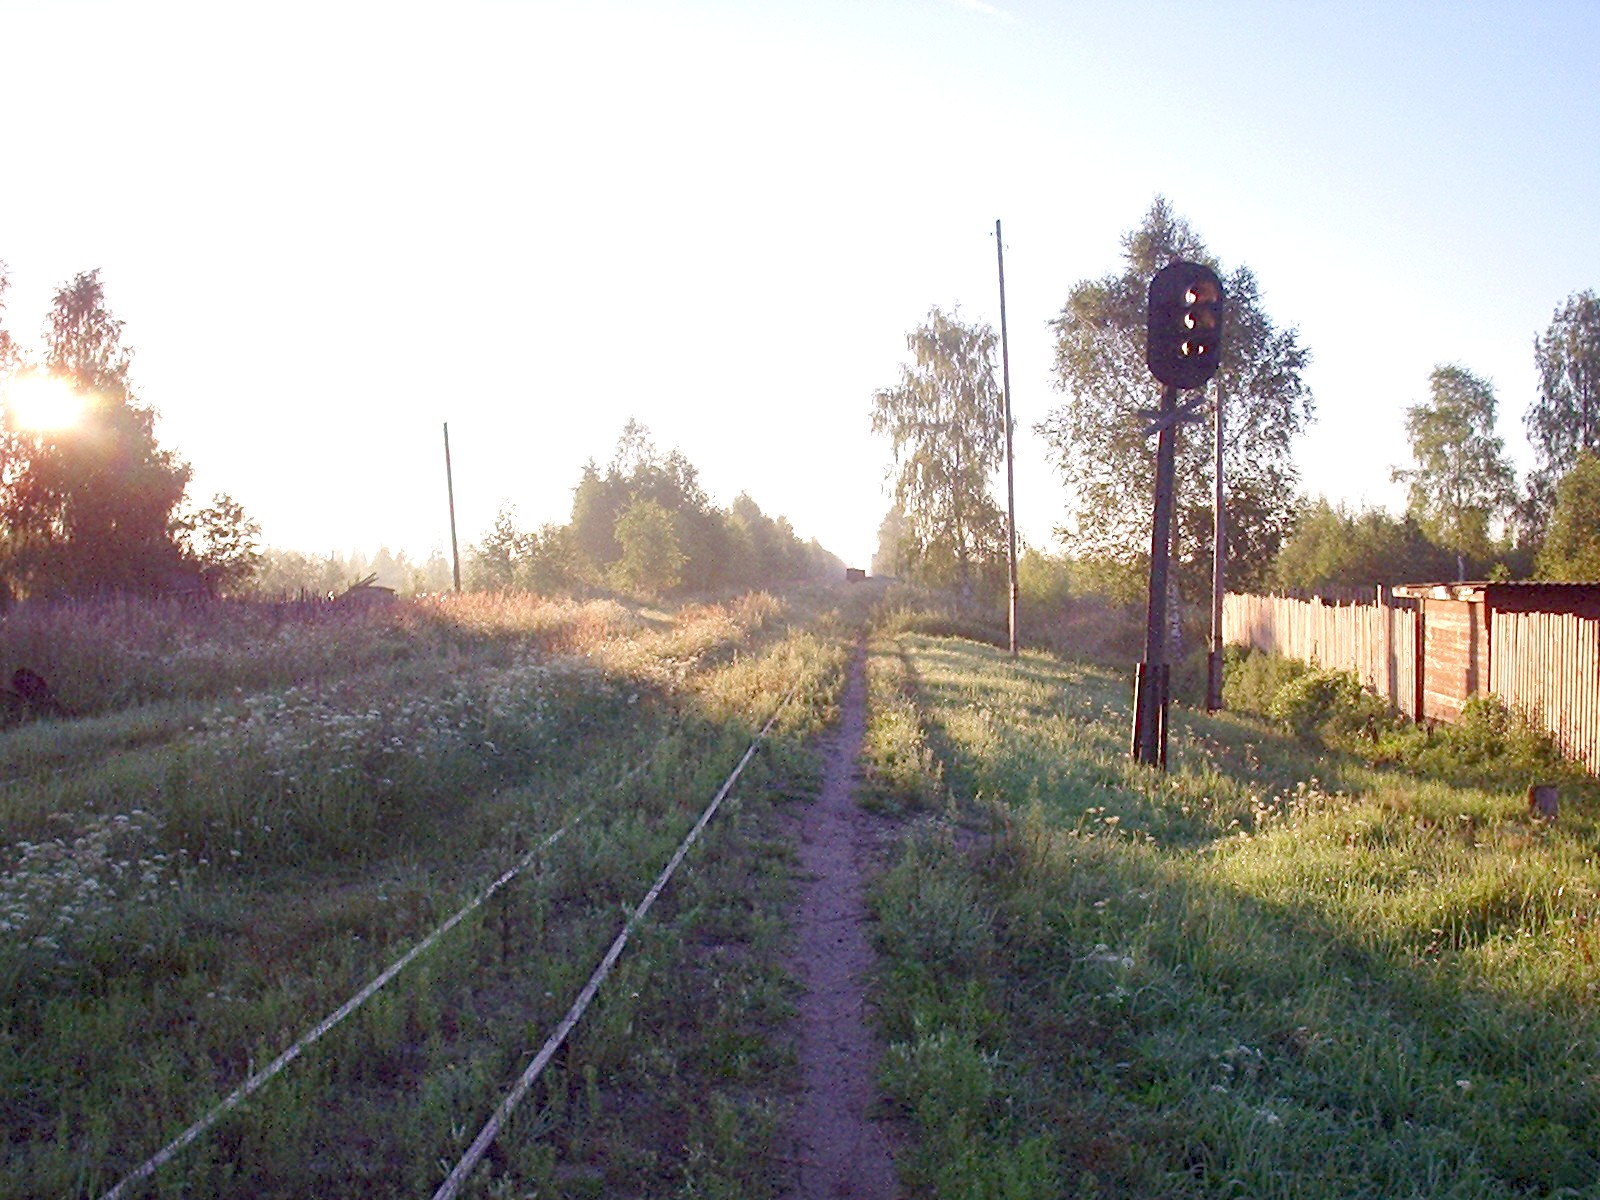 Узкоколейная железная дорога Васильевского предприятия промышленного железнодорожного транспорта  — фотографии, сделанные в 2005 году (часть 2)